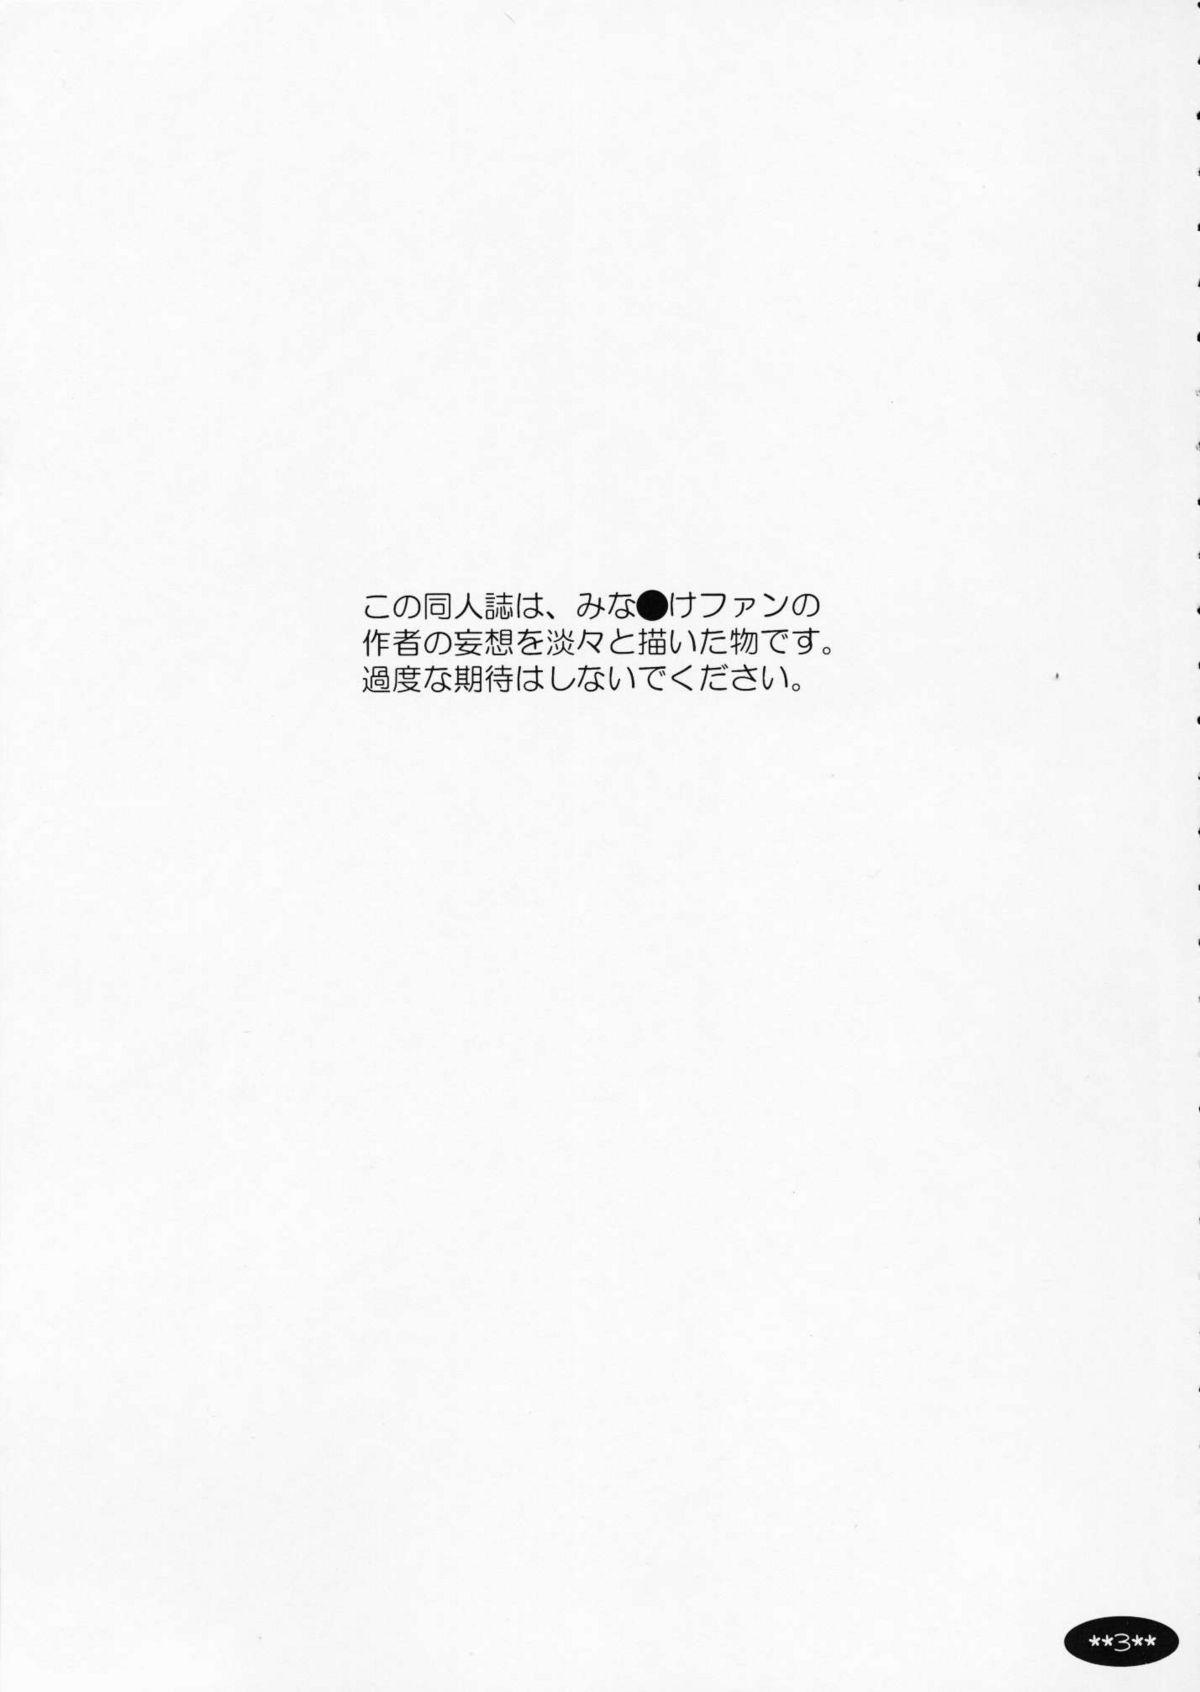 Flaca Haru no Oto - Minami-ke Nylons - Page 3